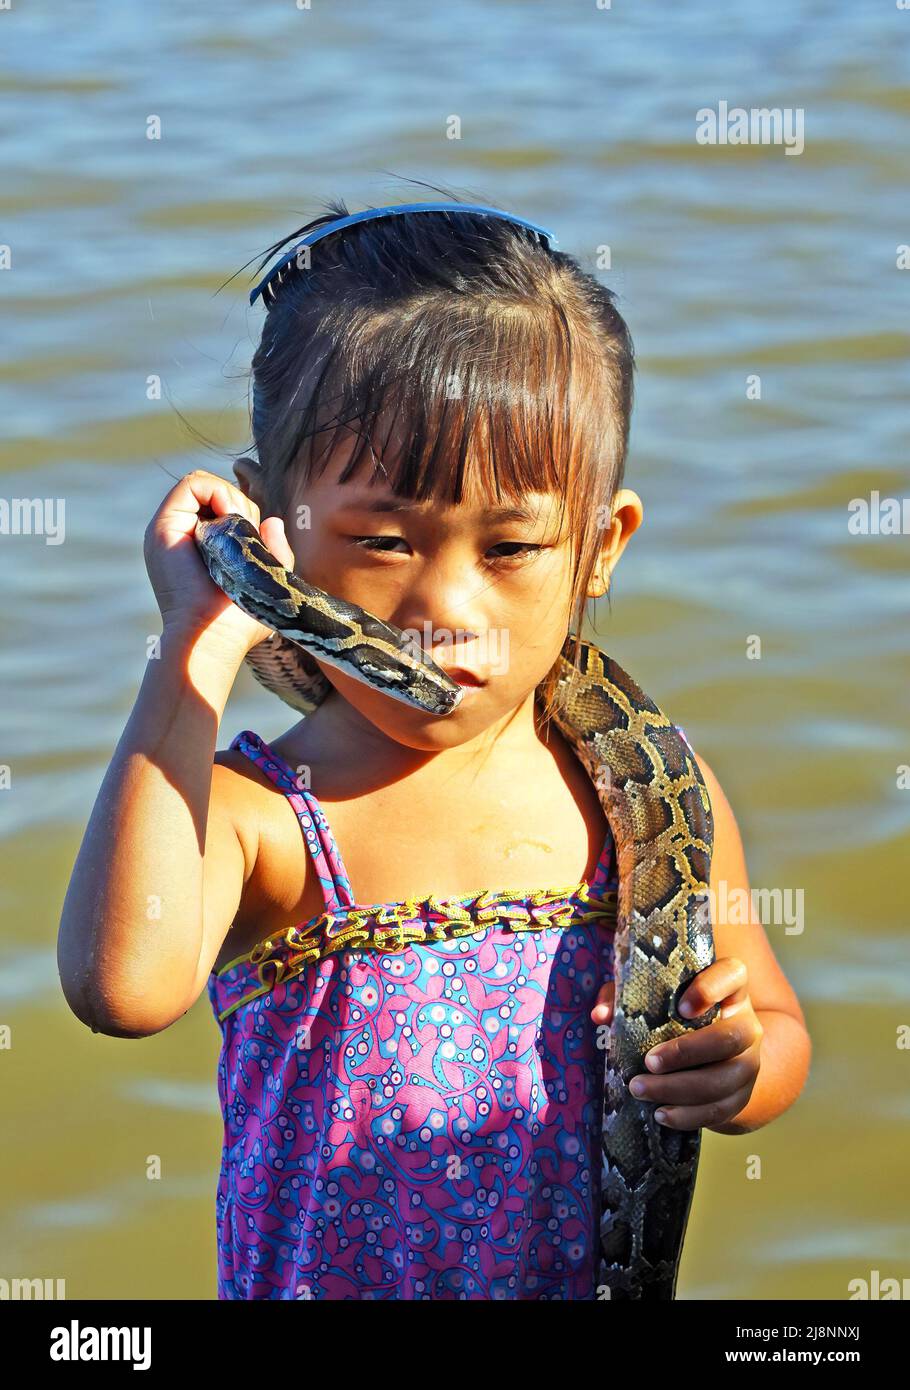 Siem Reap, Kambodscha - Dezember 9. 2019: Porträt des armen khmer kambodschanischen Mädchens, das konzentriert mit ihrer Pythonschlange um den Hals am Fluss posiert Stockfoto